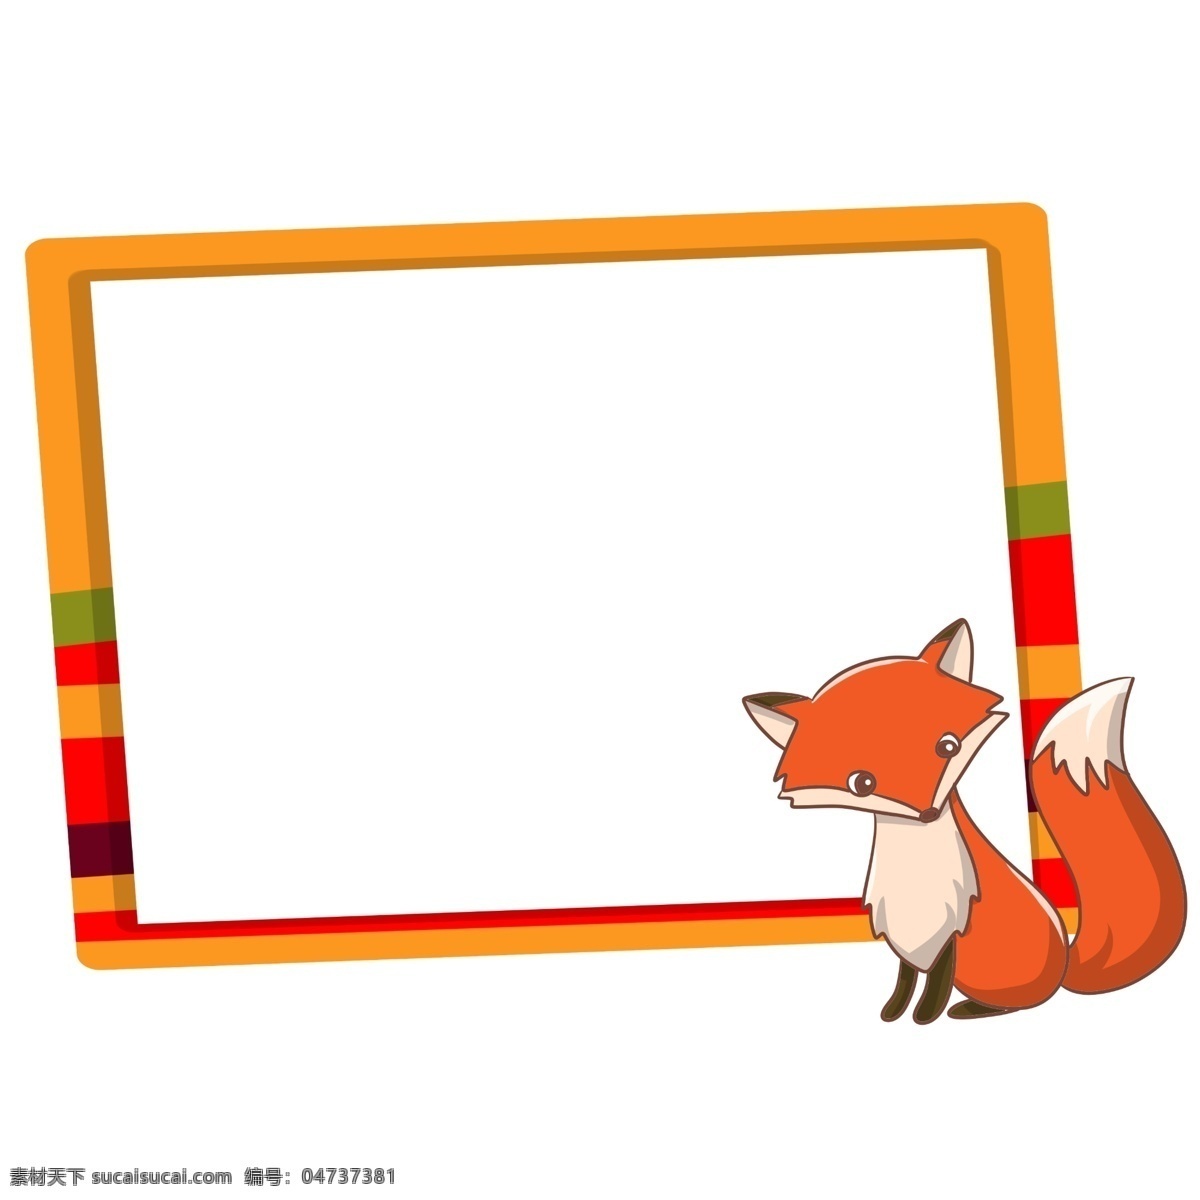 手绘 动物 狐狸 边框 可爱的狐狸 黄色的边框 橘红色的狐狸 漂亮的边框 卡通边框 手绘动物边框